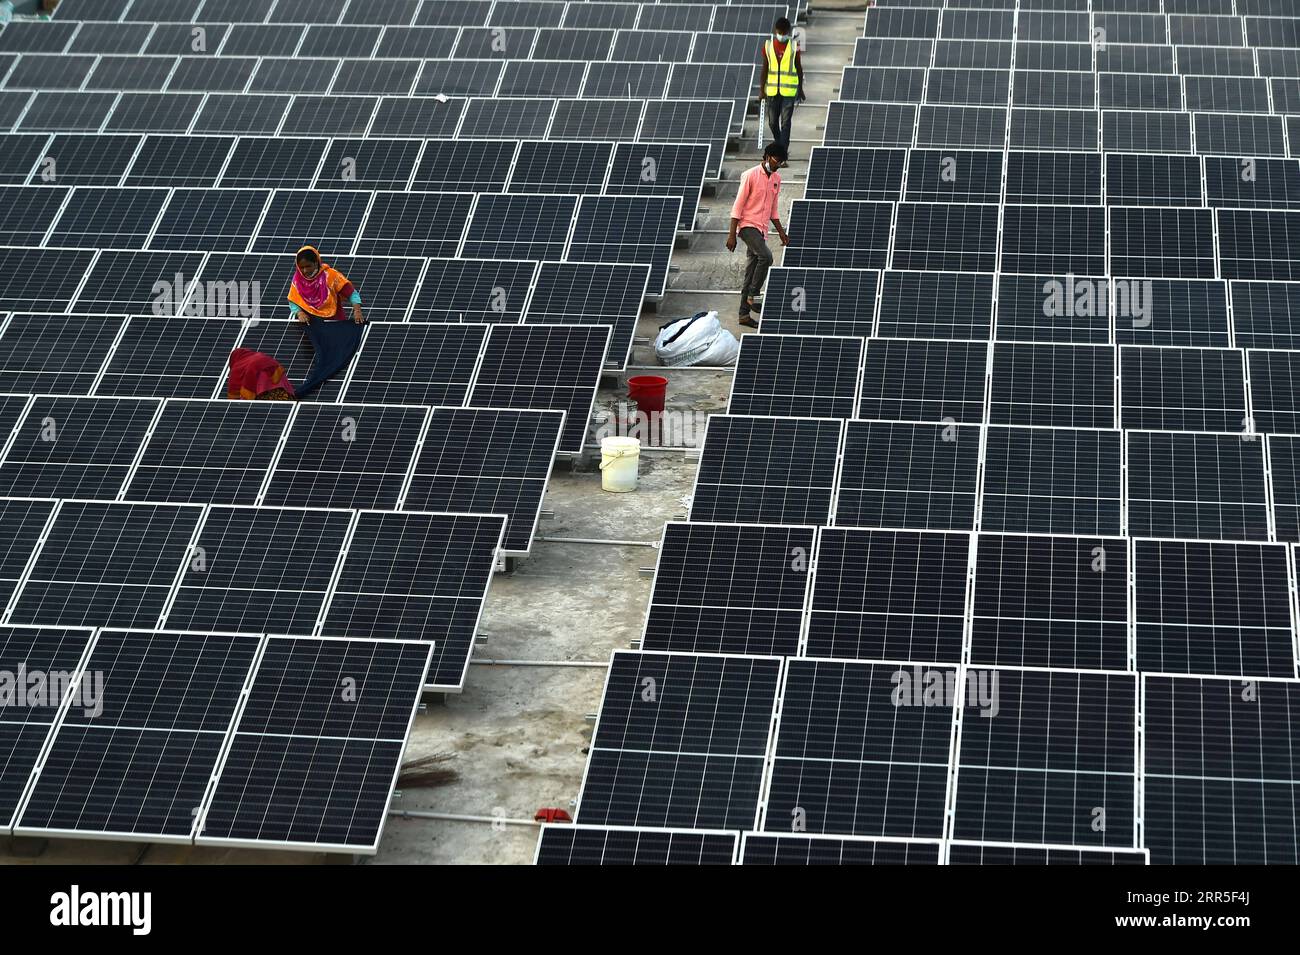 210104 -- GAZIPUR, 4 gennaio 2021 -- i tecnici installano pannelli solari in un edificio di fabbrica a Gazipur, alla periferia della capitale Dacca, Bangladesh, il 3 gennaio 2021. Al giorno d'oggi i sistemi solari stanno diventando una forma sempre più popolare di energia alternativa in Bangladesh, e molte fabbriche del paese stanno passando a sistemi di energia solare. FABBRICA DEL BANGLADESH - ENERGIA SOLARE Salim PUBLICATIONxNOTxINxCHN Foto Stock